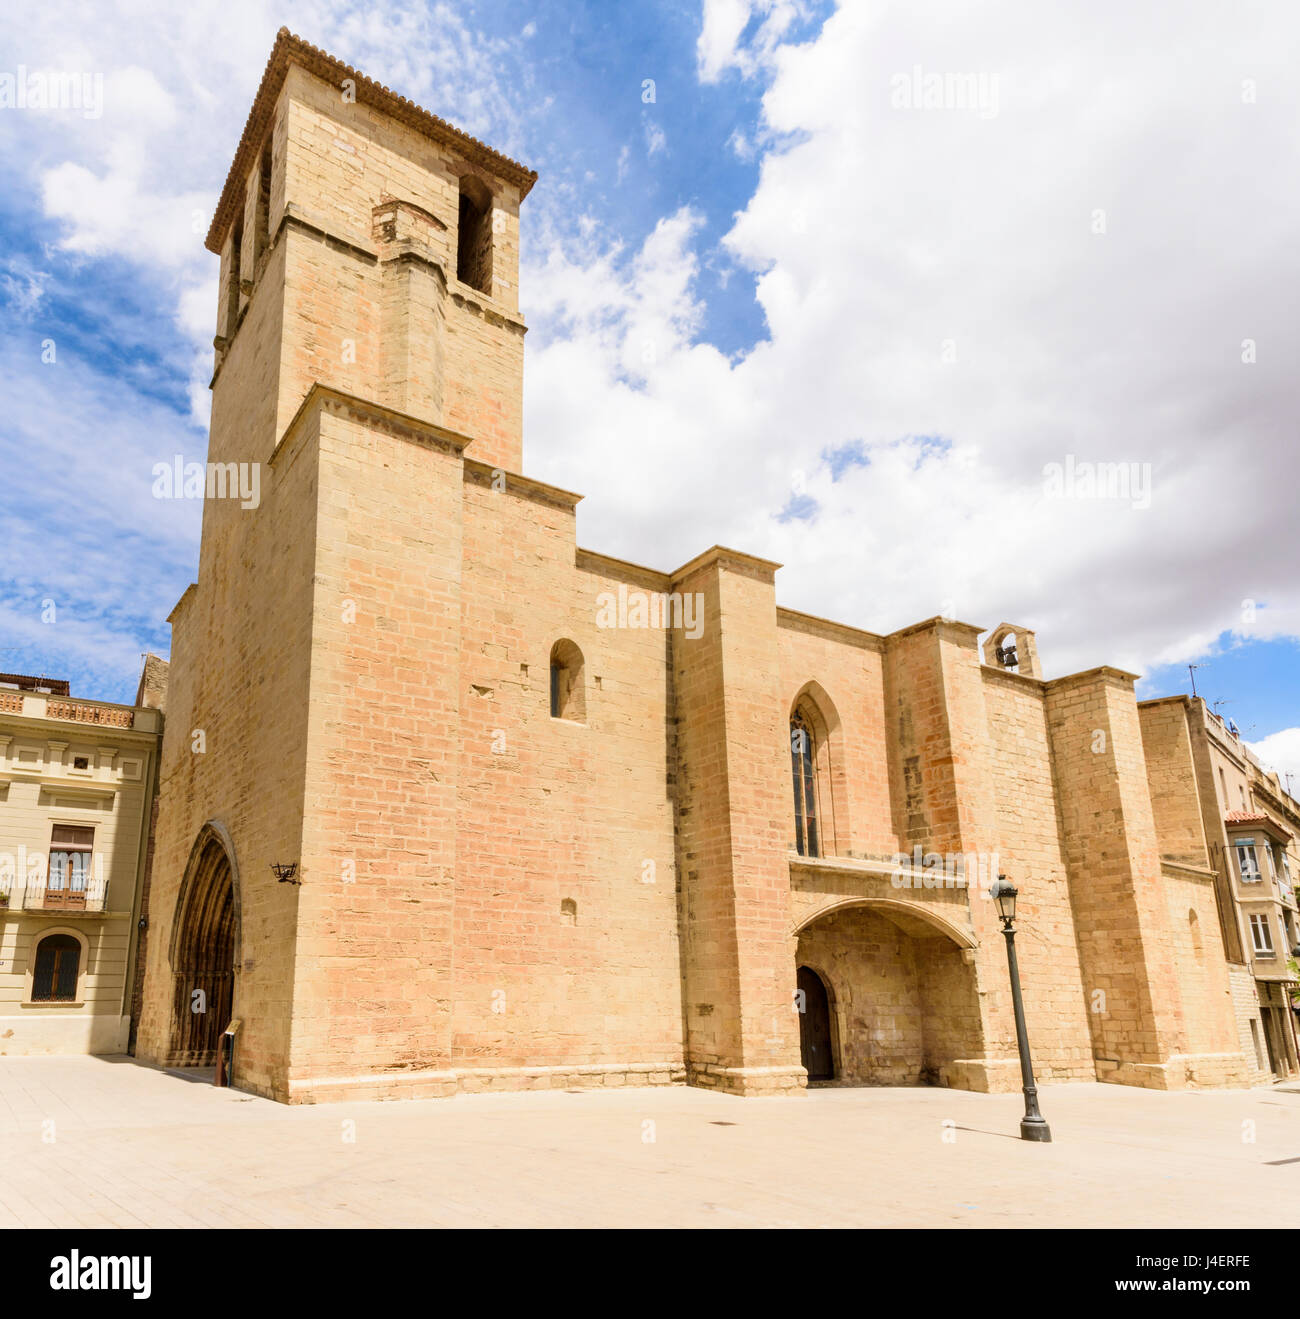 Facade of the Gothic Esglesia Vella de Sant Miquel, Placa de l’Esglesia, L'Espluga de Francoli, Tarragona, Catalonia, Spain Stock Photo